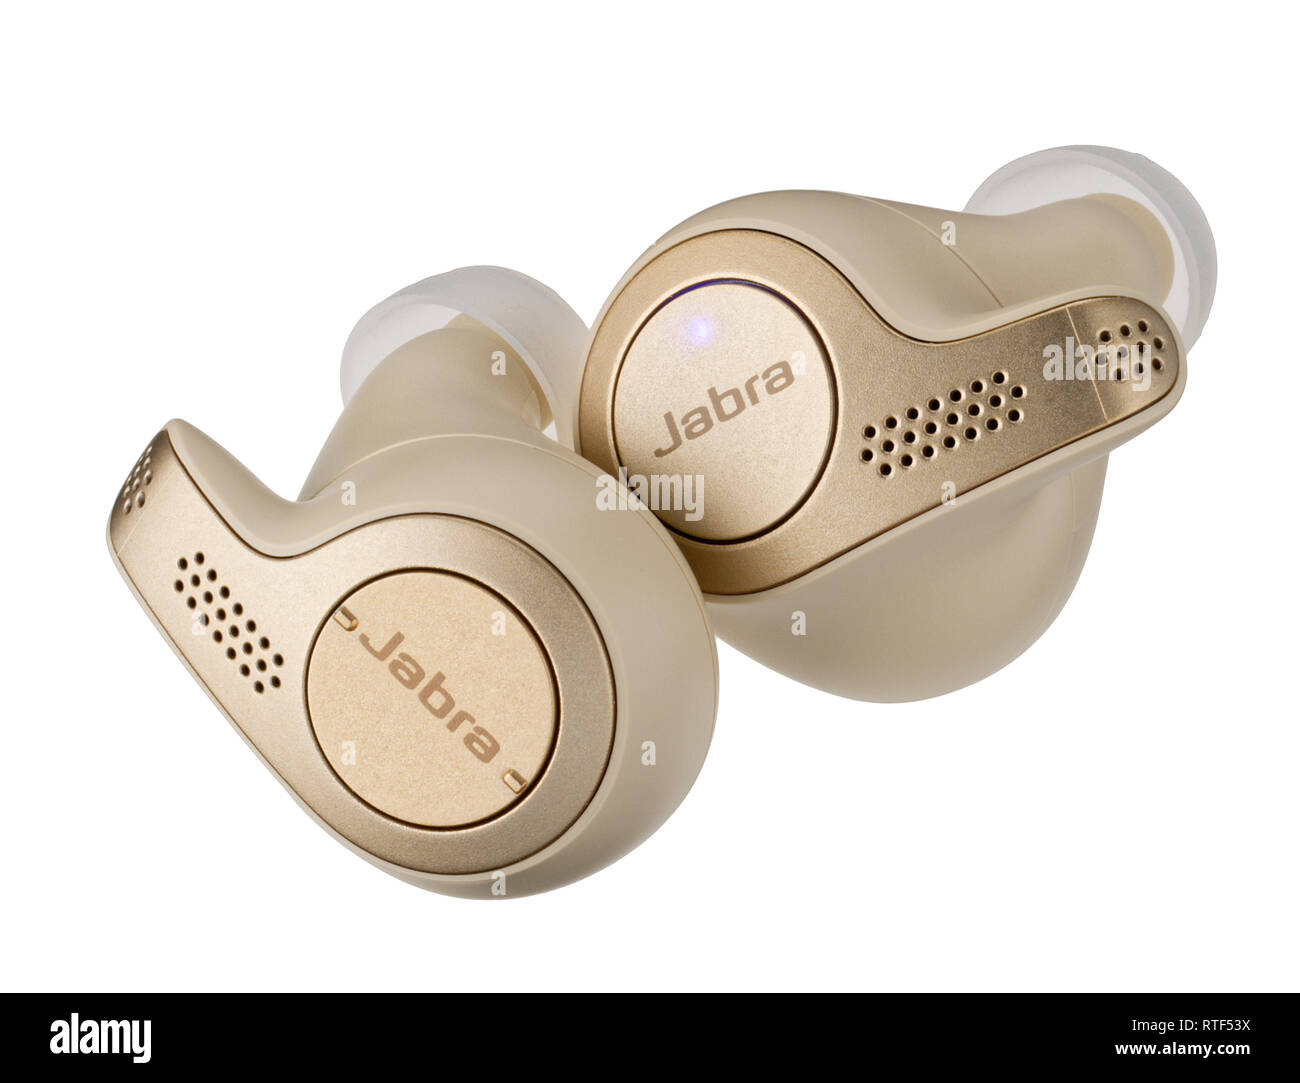 Jabra Elite 65T Modell der Ohrhörer für qualitativ hochwertige Gespräche. Reduzierung von Windgeräuschen und Mikrofonen in gebaut. Stockfoto